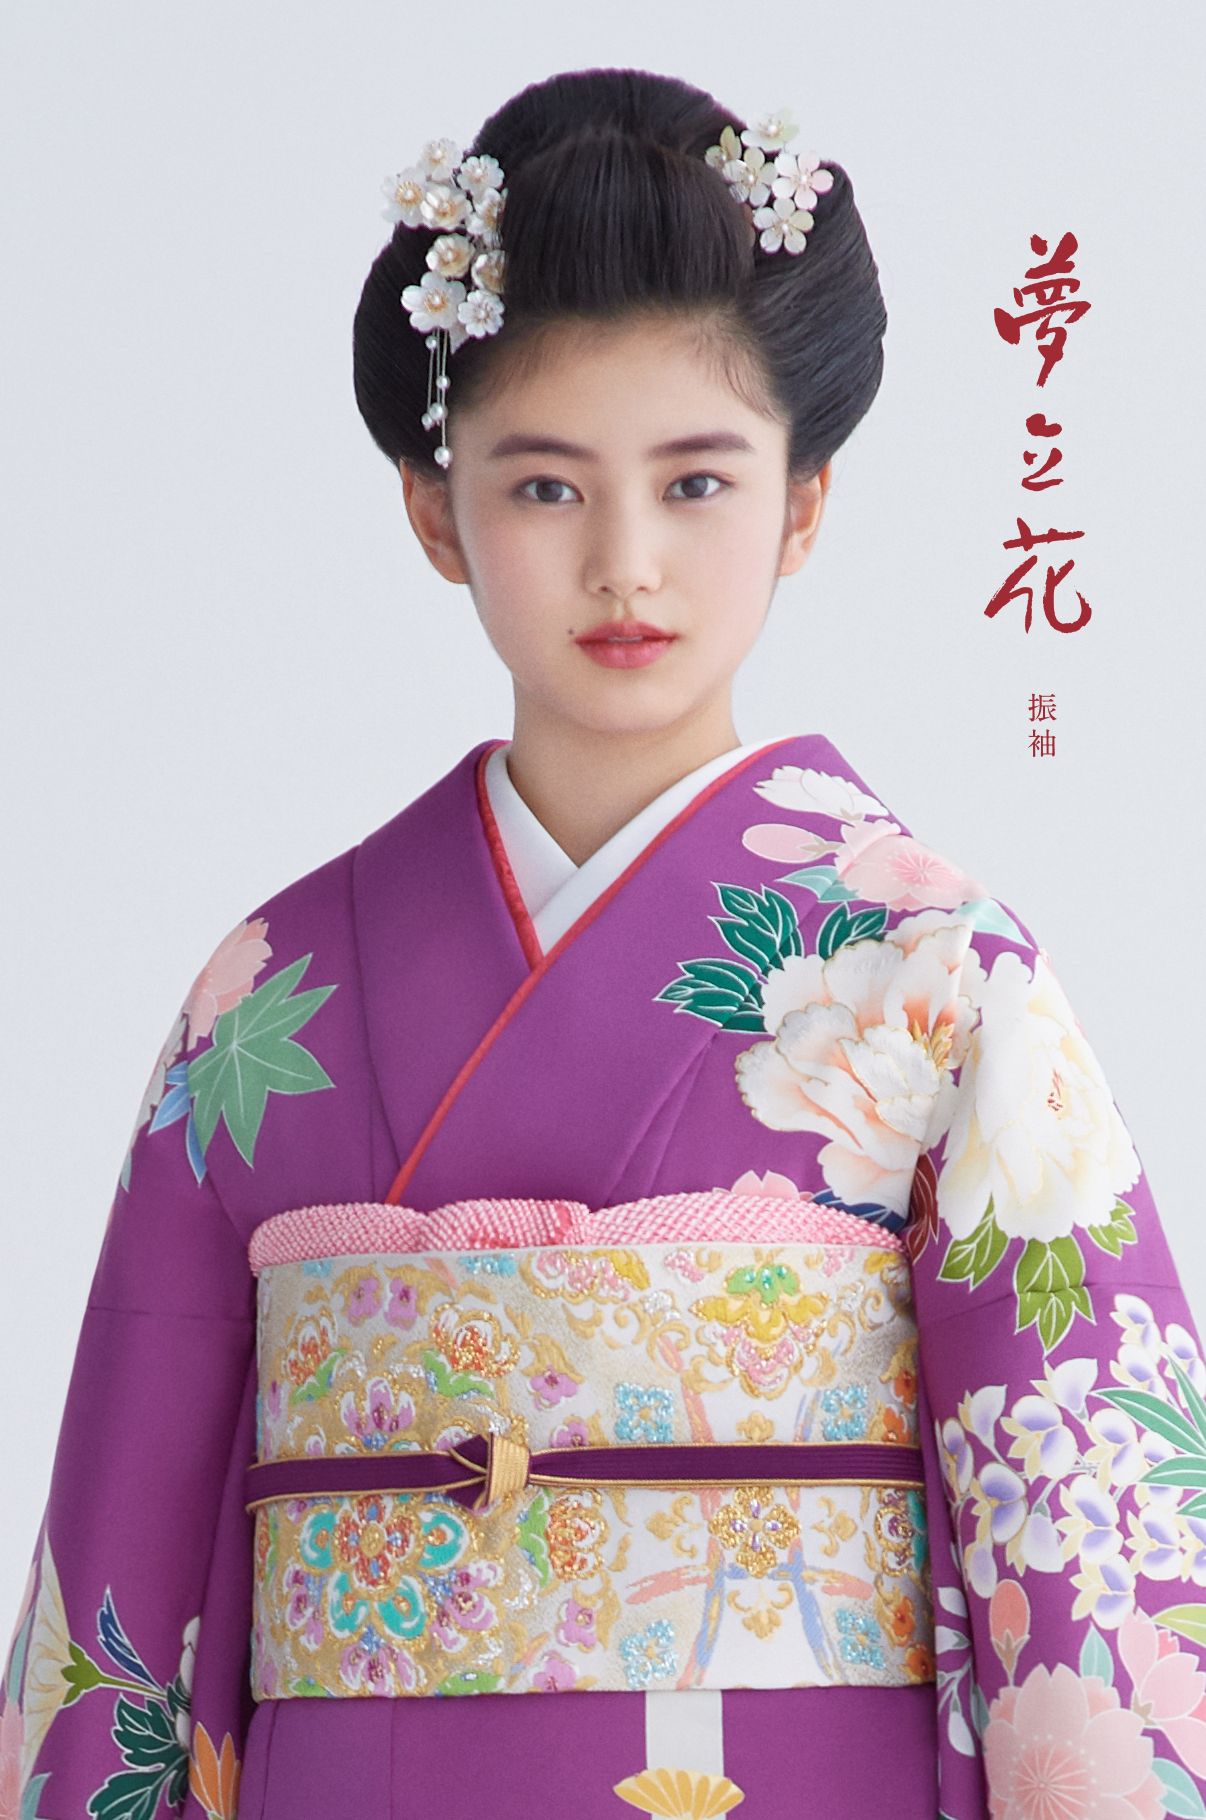 かんざし 簪 和装髪飾り かづら清 京都 成人式 結婚式 和装 - 着物